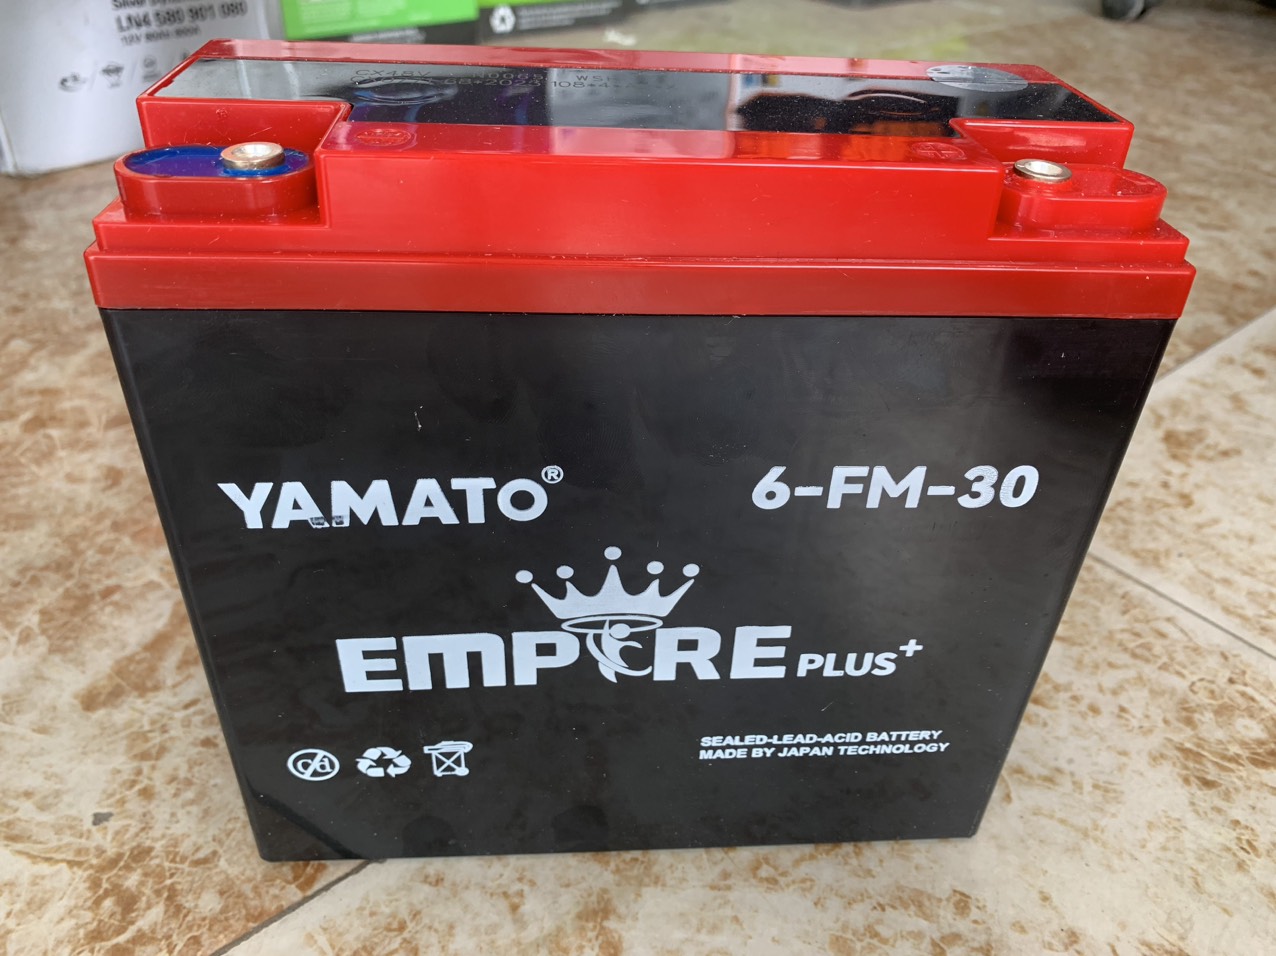 Bình ắc quy Yamato 6-FM-30 Plus thay cho xe điện Xmen